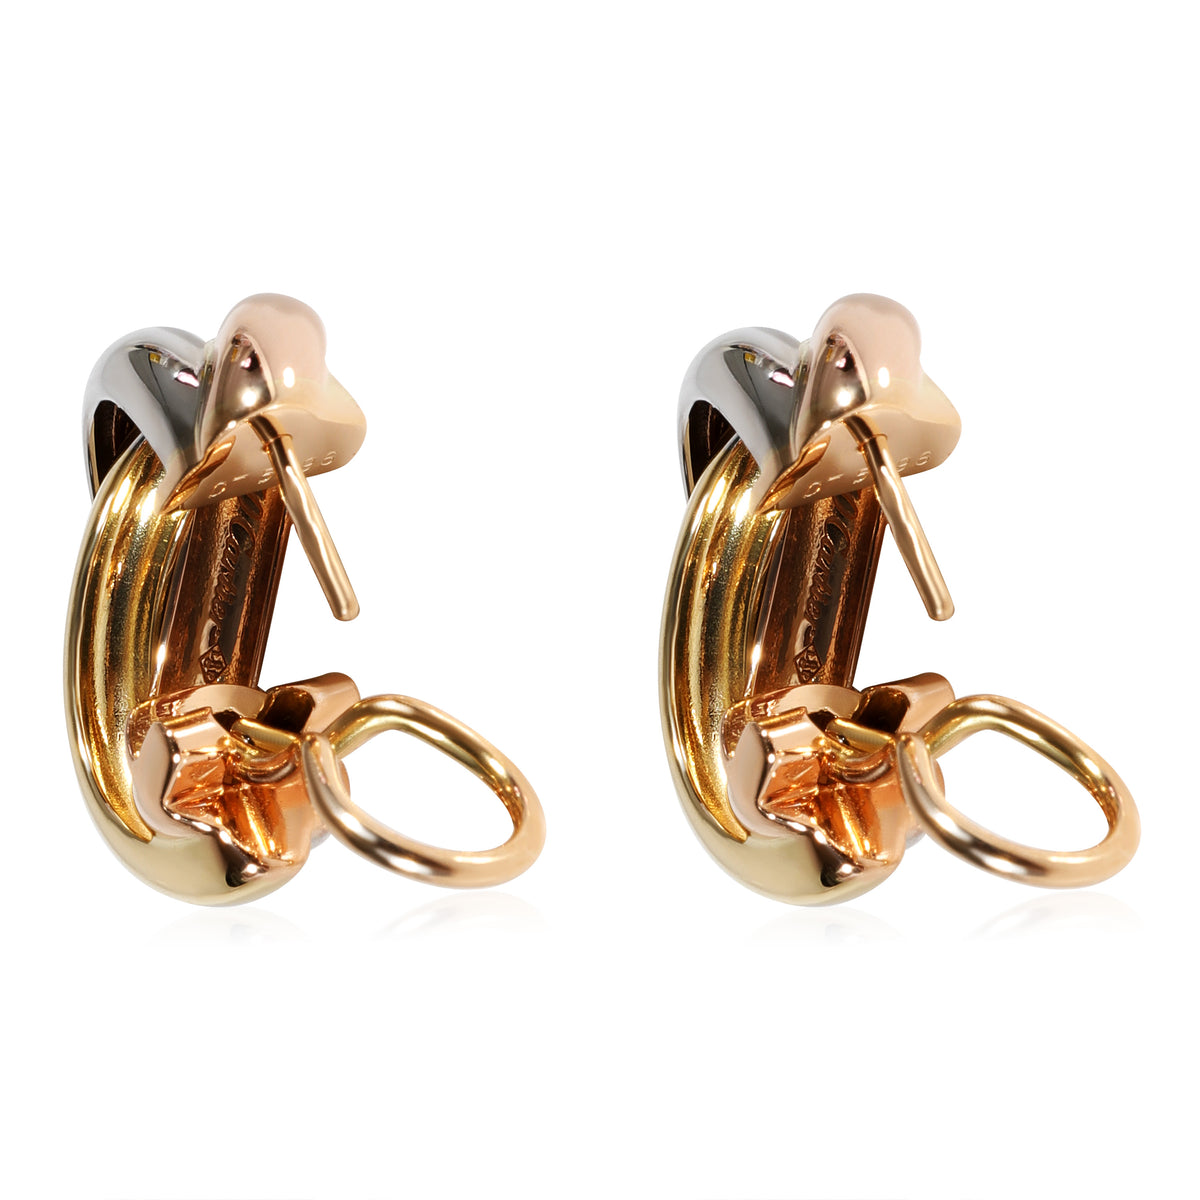 Cartier Trinity Earrings in 18k 3 Tone Gold